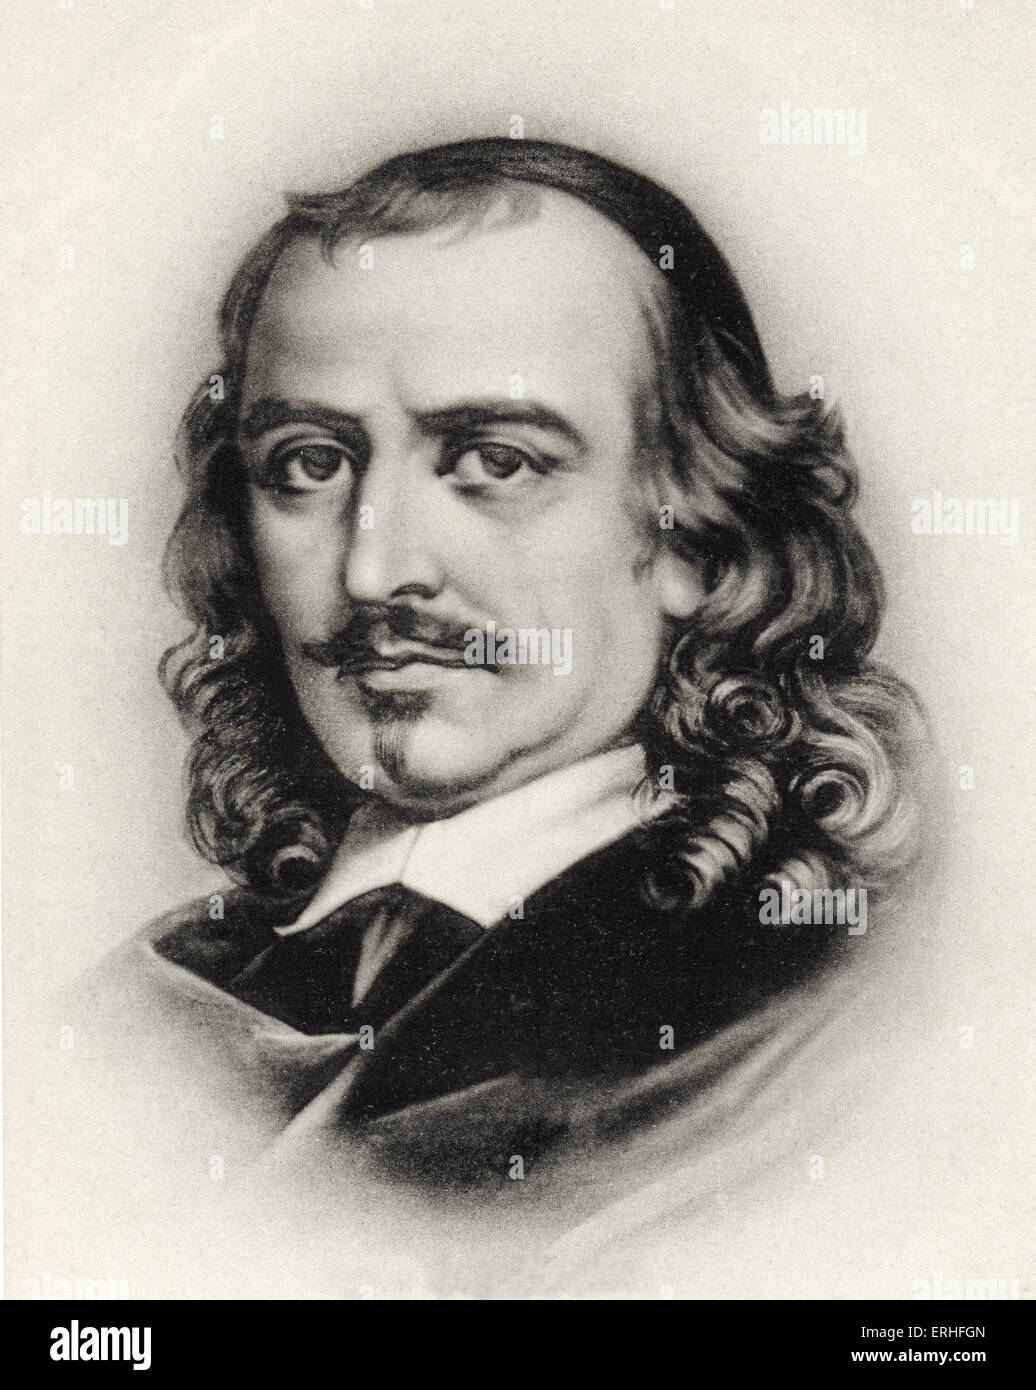 Pierre Corneille, Portrait. Französischer Dramatiker & Dramatiker. 6. Juni 1606 - 1. Oktober 1684. Stockfoto